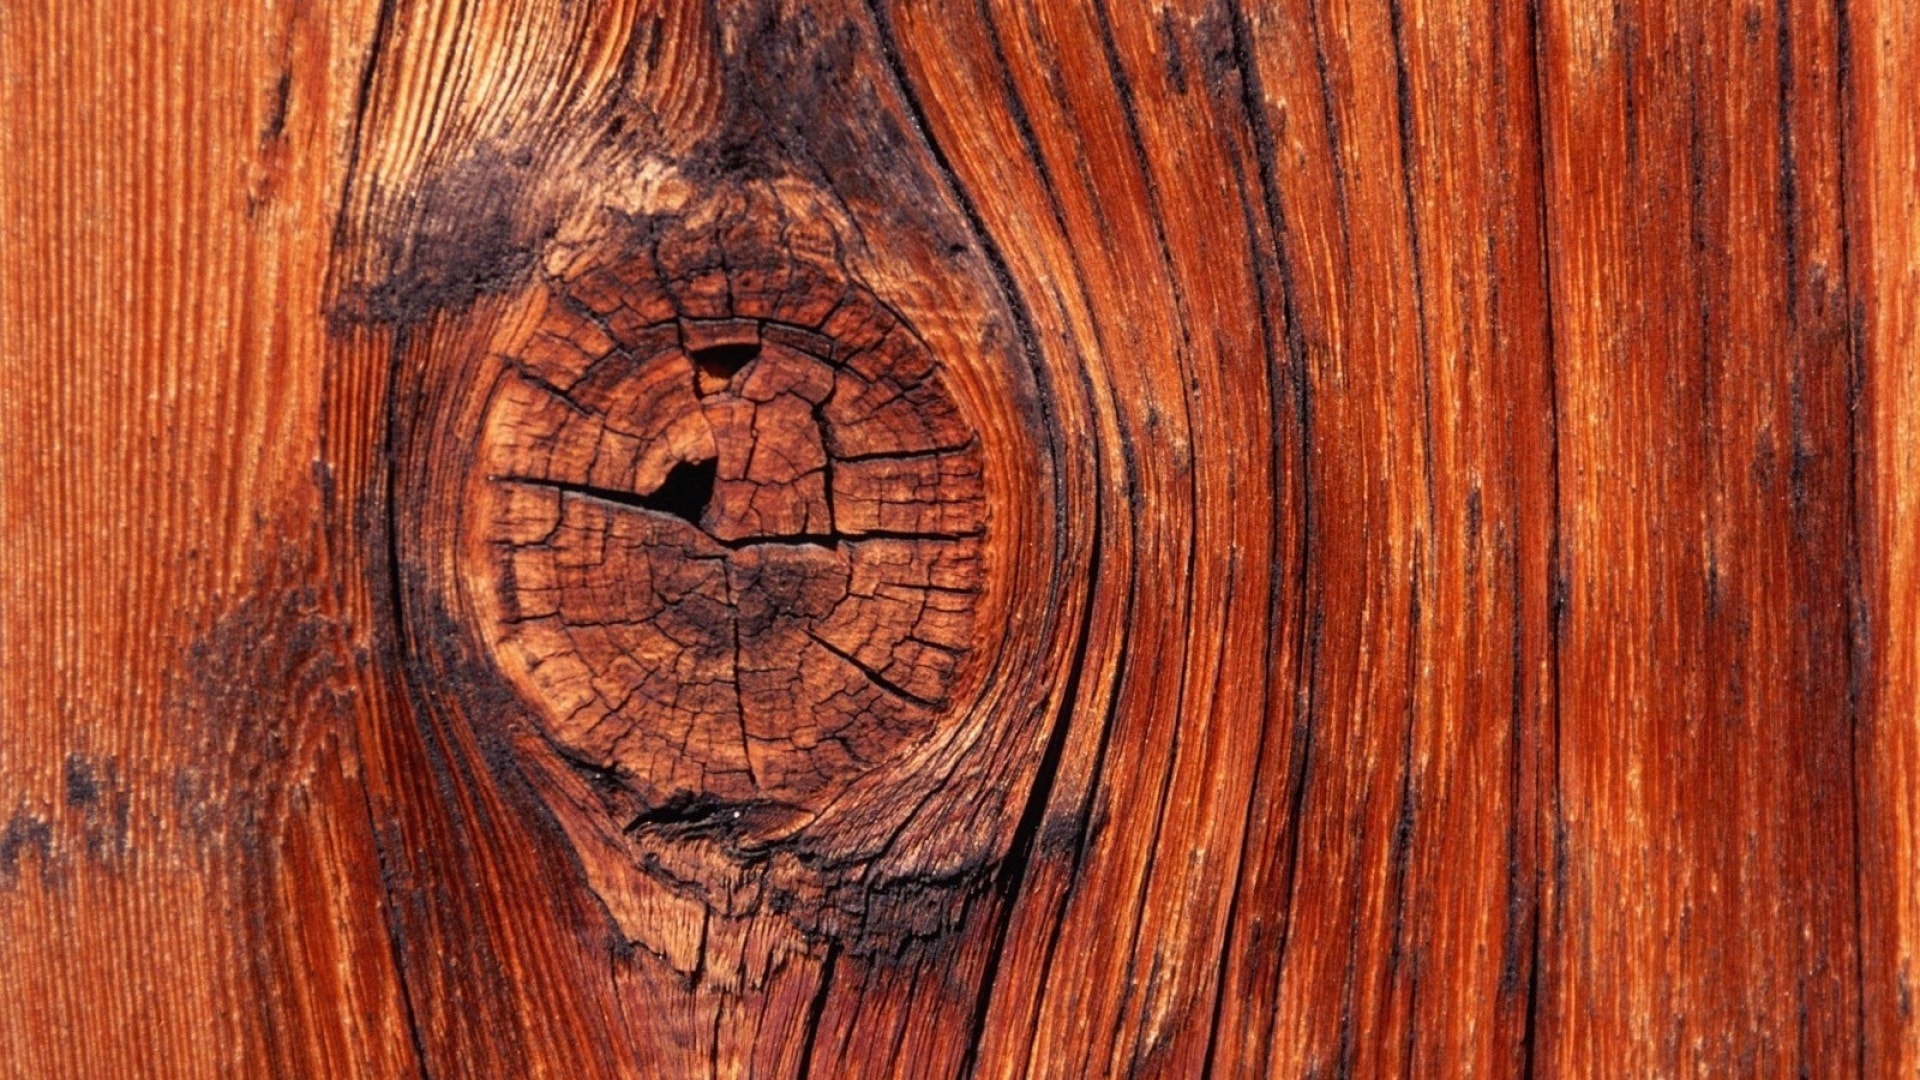 Guida alla scelta del legno per mobili parte 10: legno ciliegio